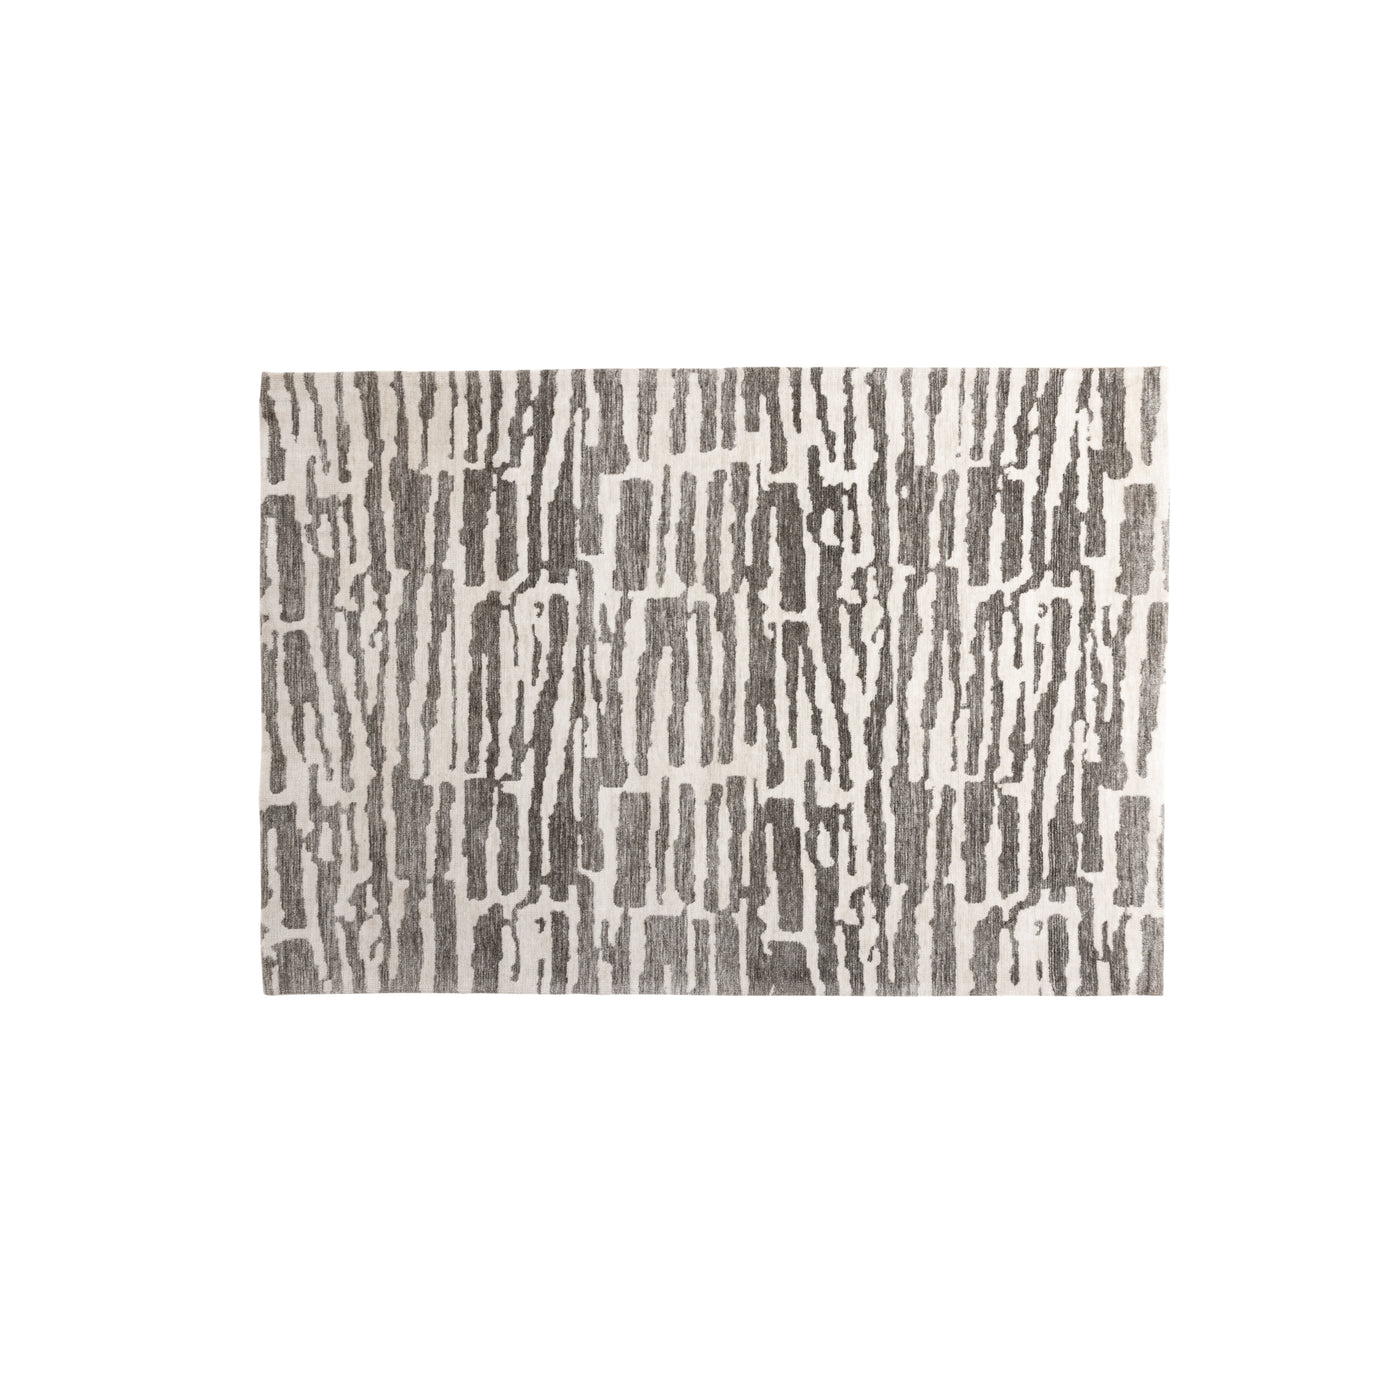 Mieke Micropolyester – 290 x 200 – rechteckig – Weiß/Grau